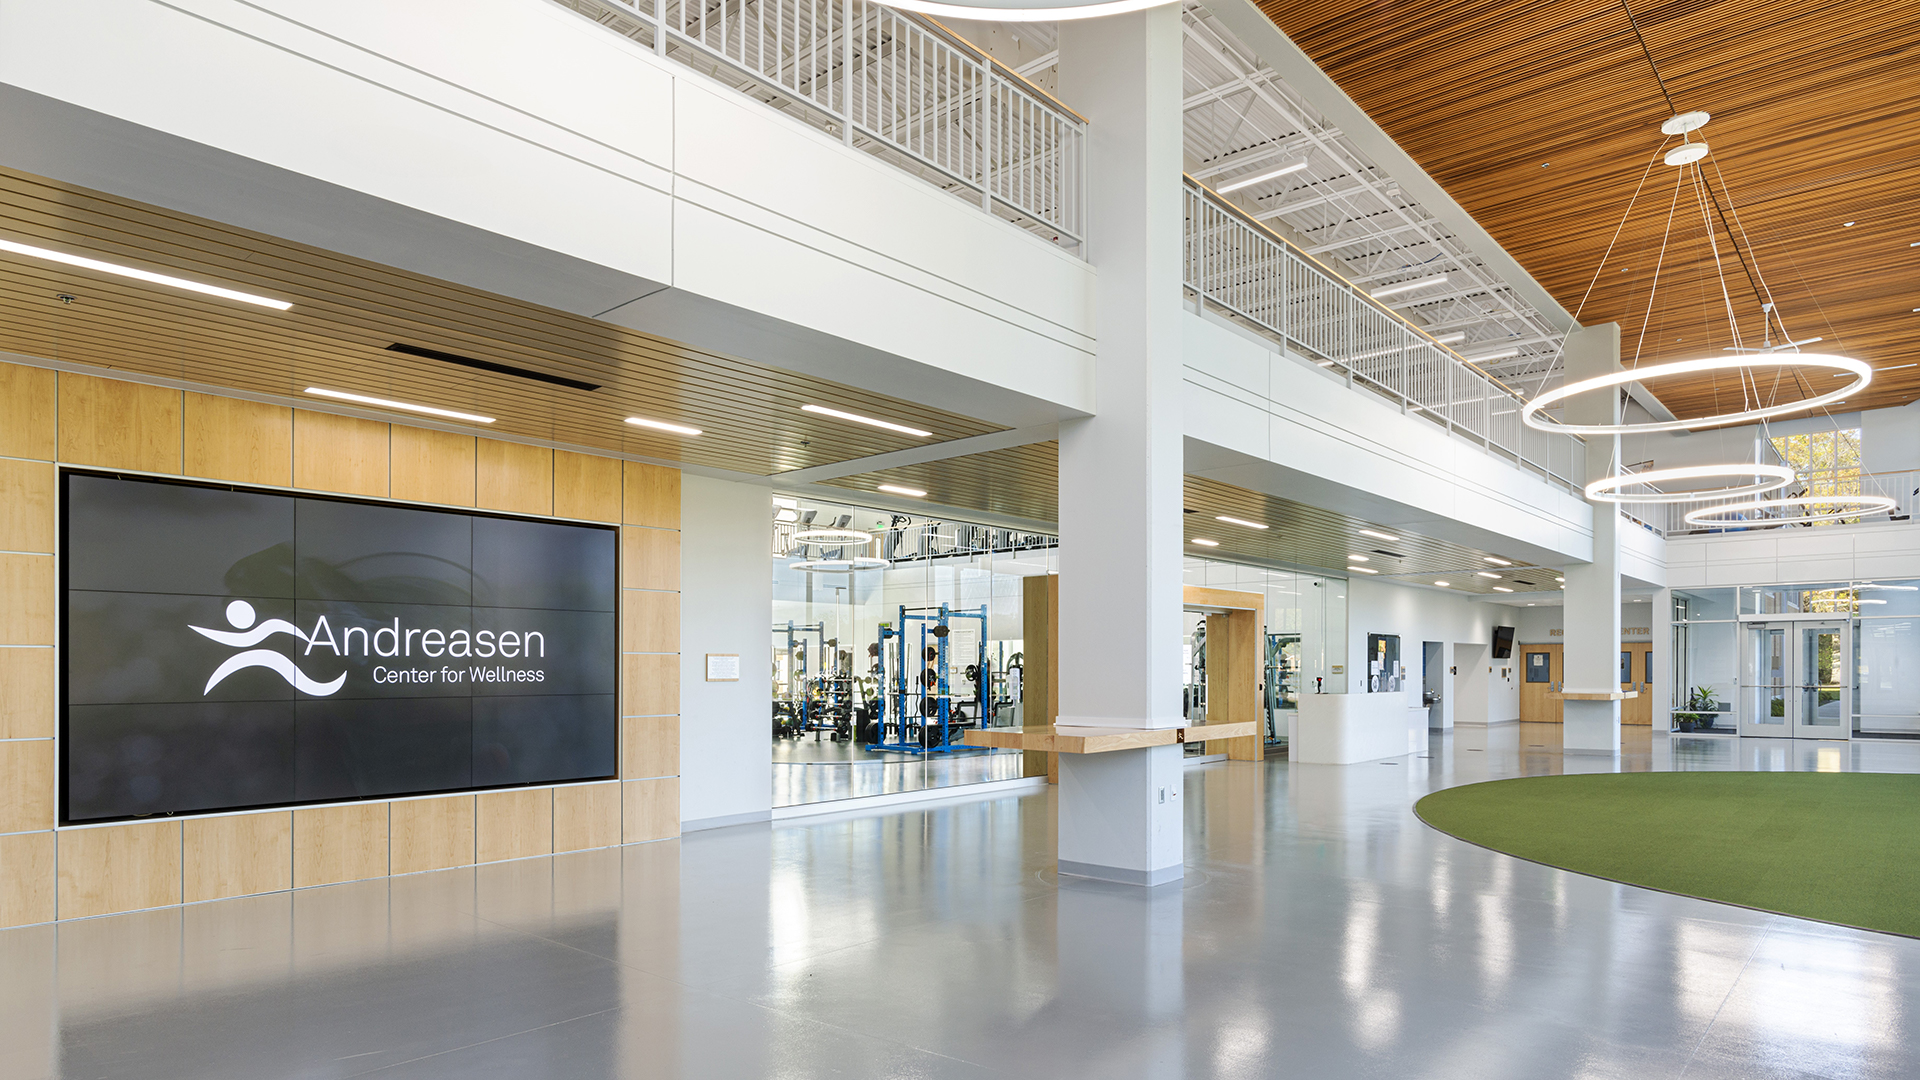 Andrews University - Andreasen Center for Wellness